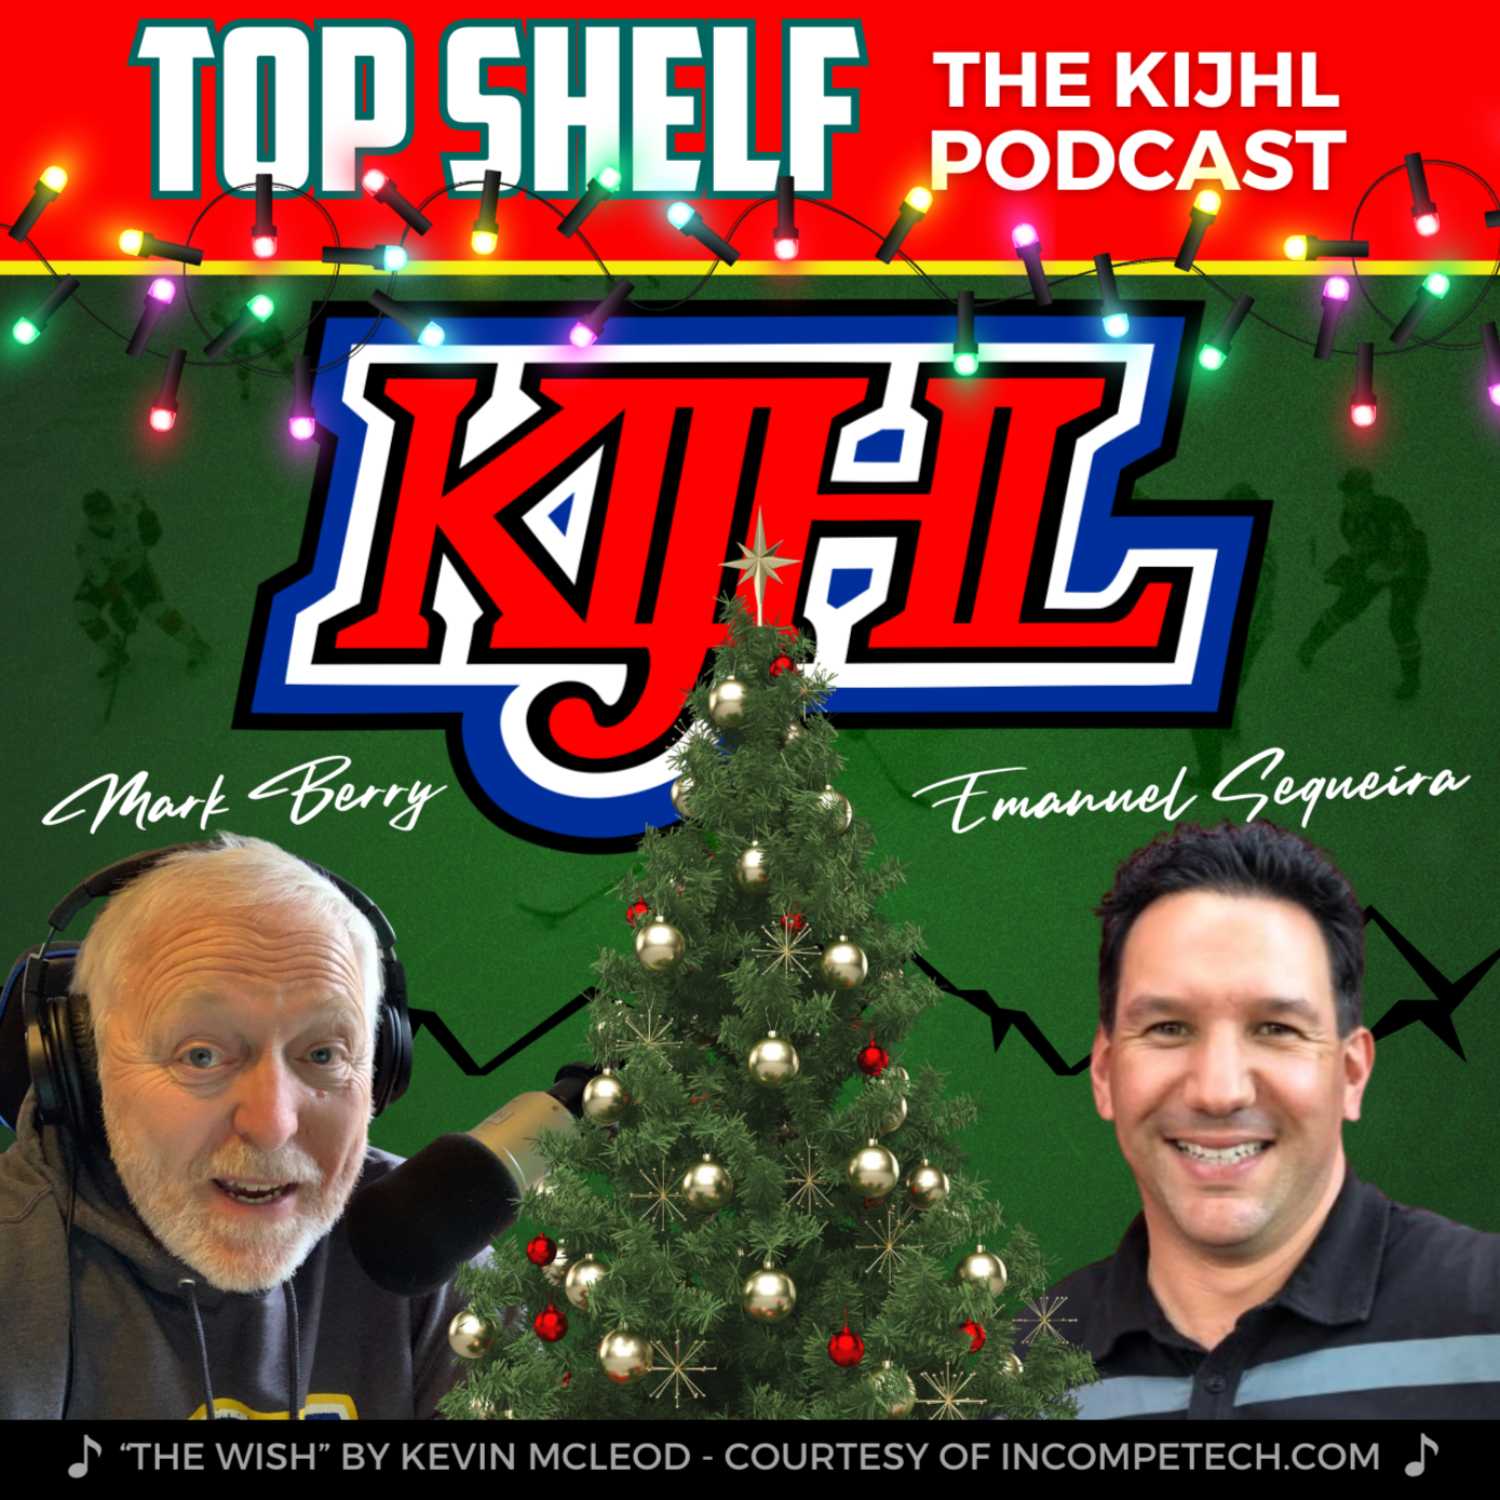 Top Shelf: The KIJHL Podcast - S2 E16 - December 22 - Season's Greetings from the KIJHL